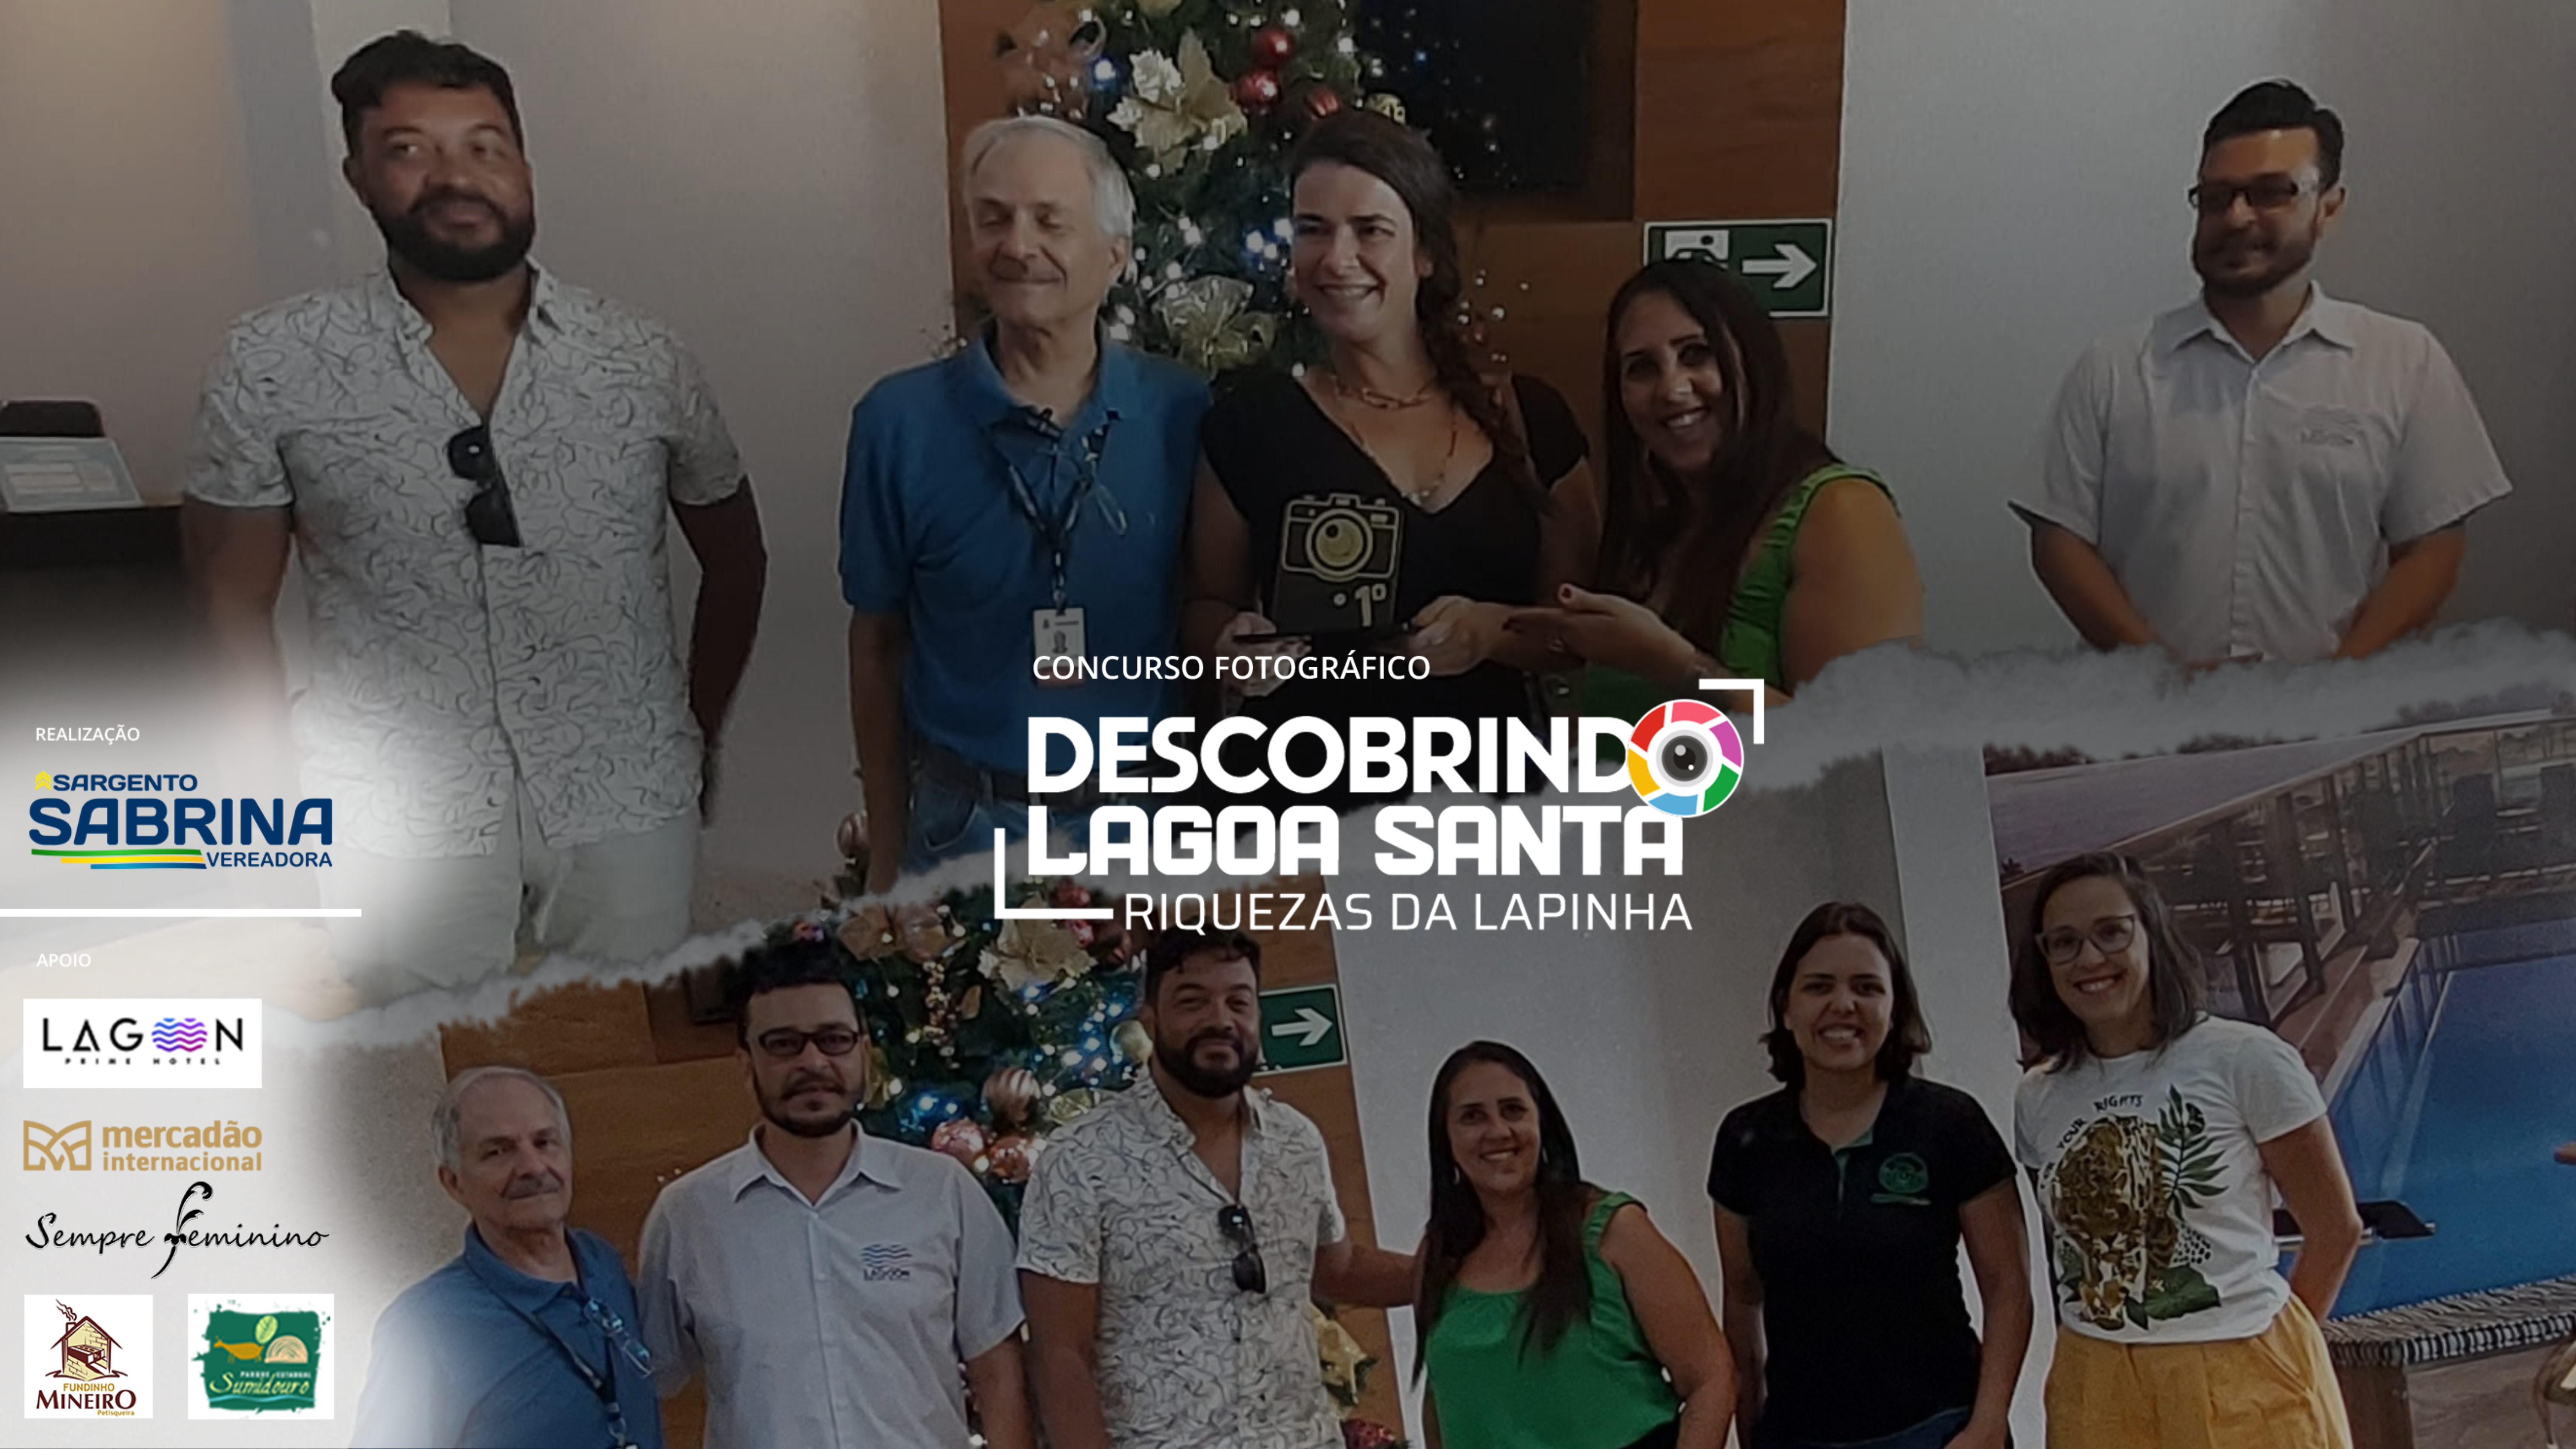 Vereadora Sargento Sabrina promove a 2º edição do “Concurso Fotográfico: Descobrindo Lagoa Santa- Riquezas da Lapinha